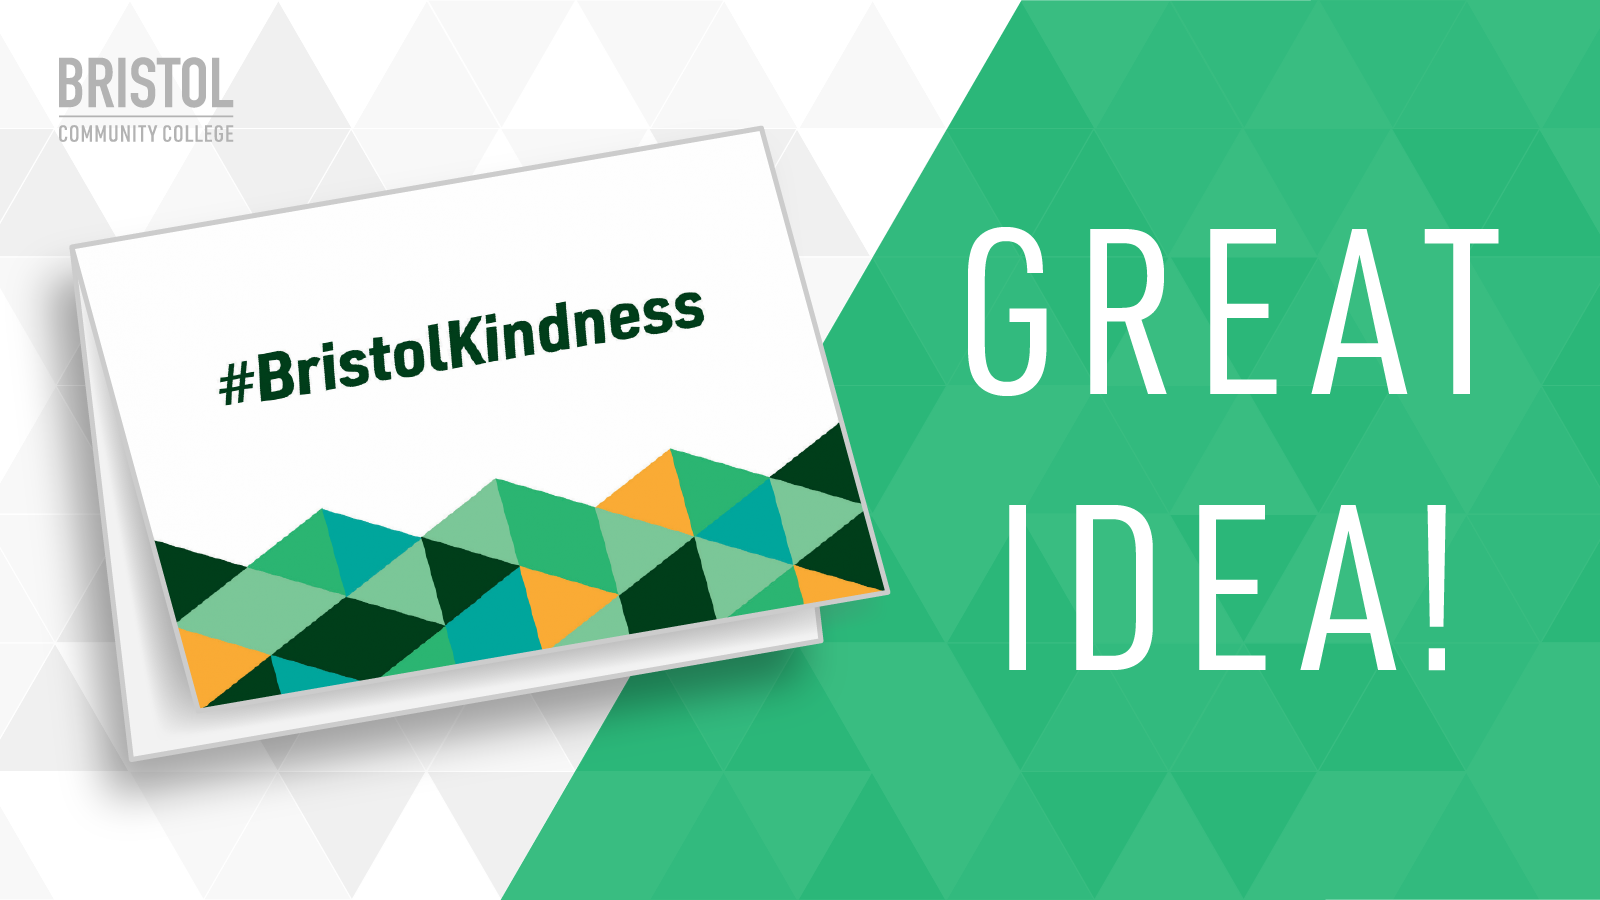 Bristol Kindness - Great Idea